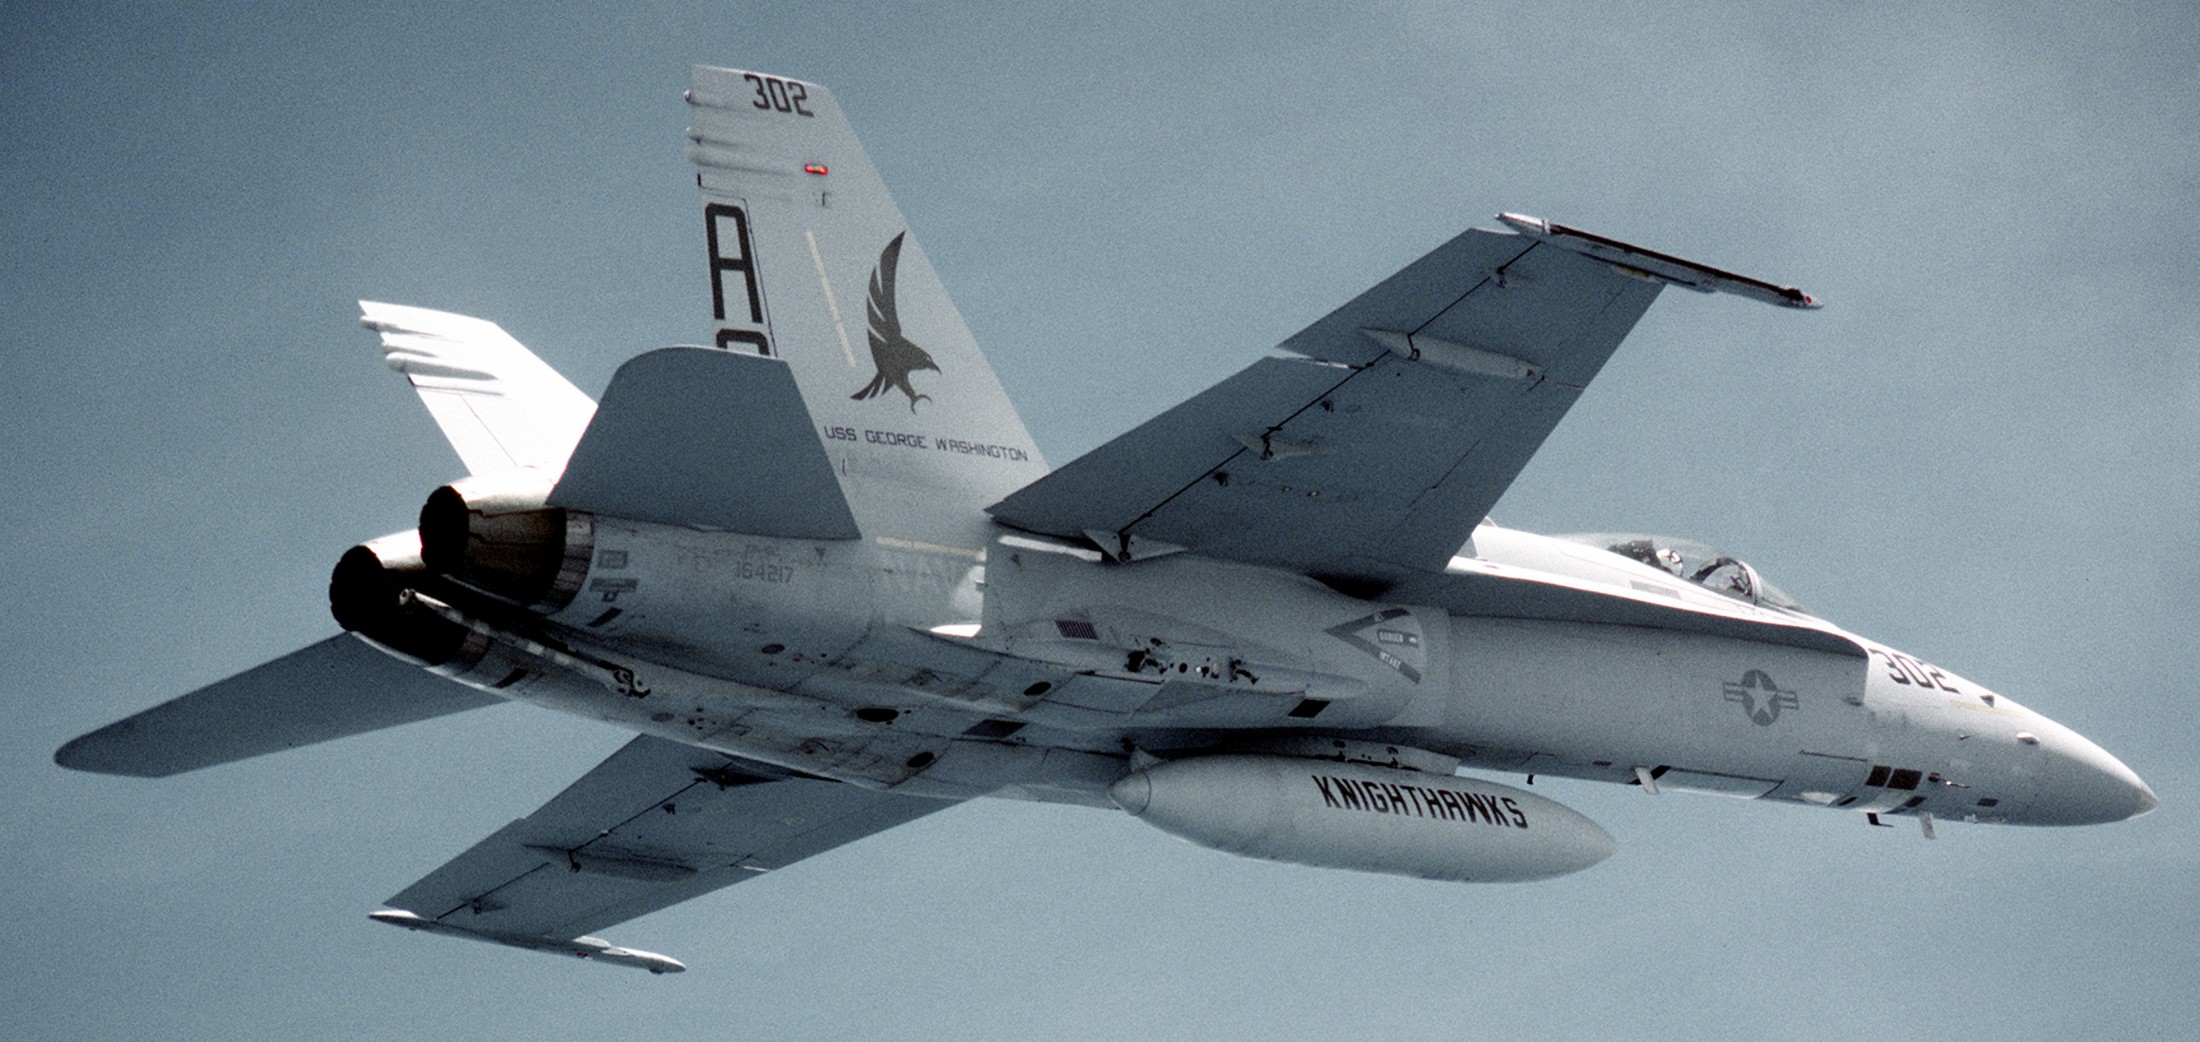 vfa-136 knighthawks strike fighter squadron f/a-18c hornet 1993 99 cvw-7